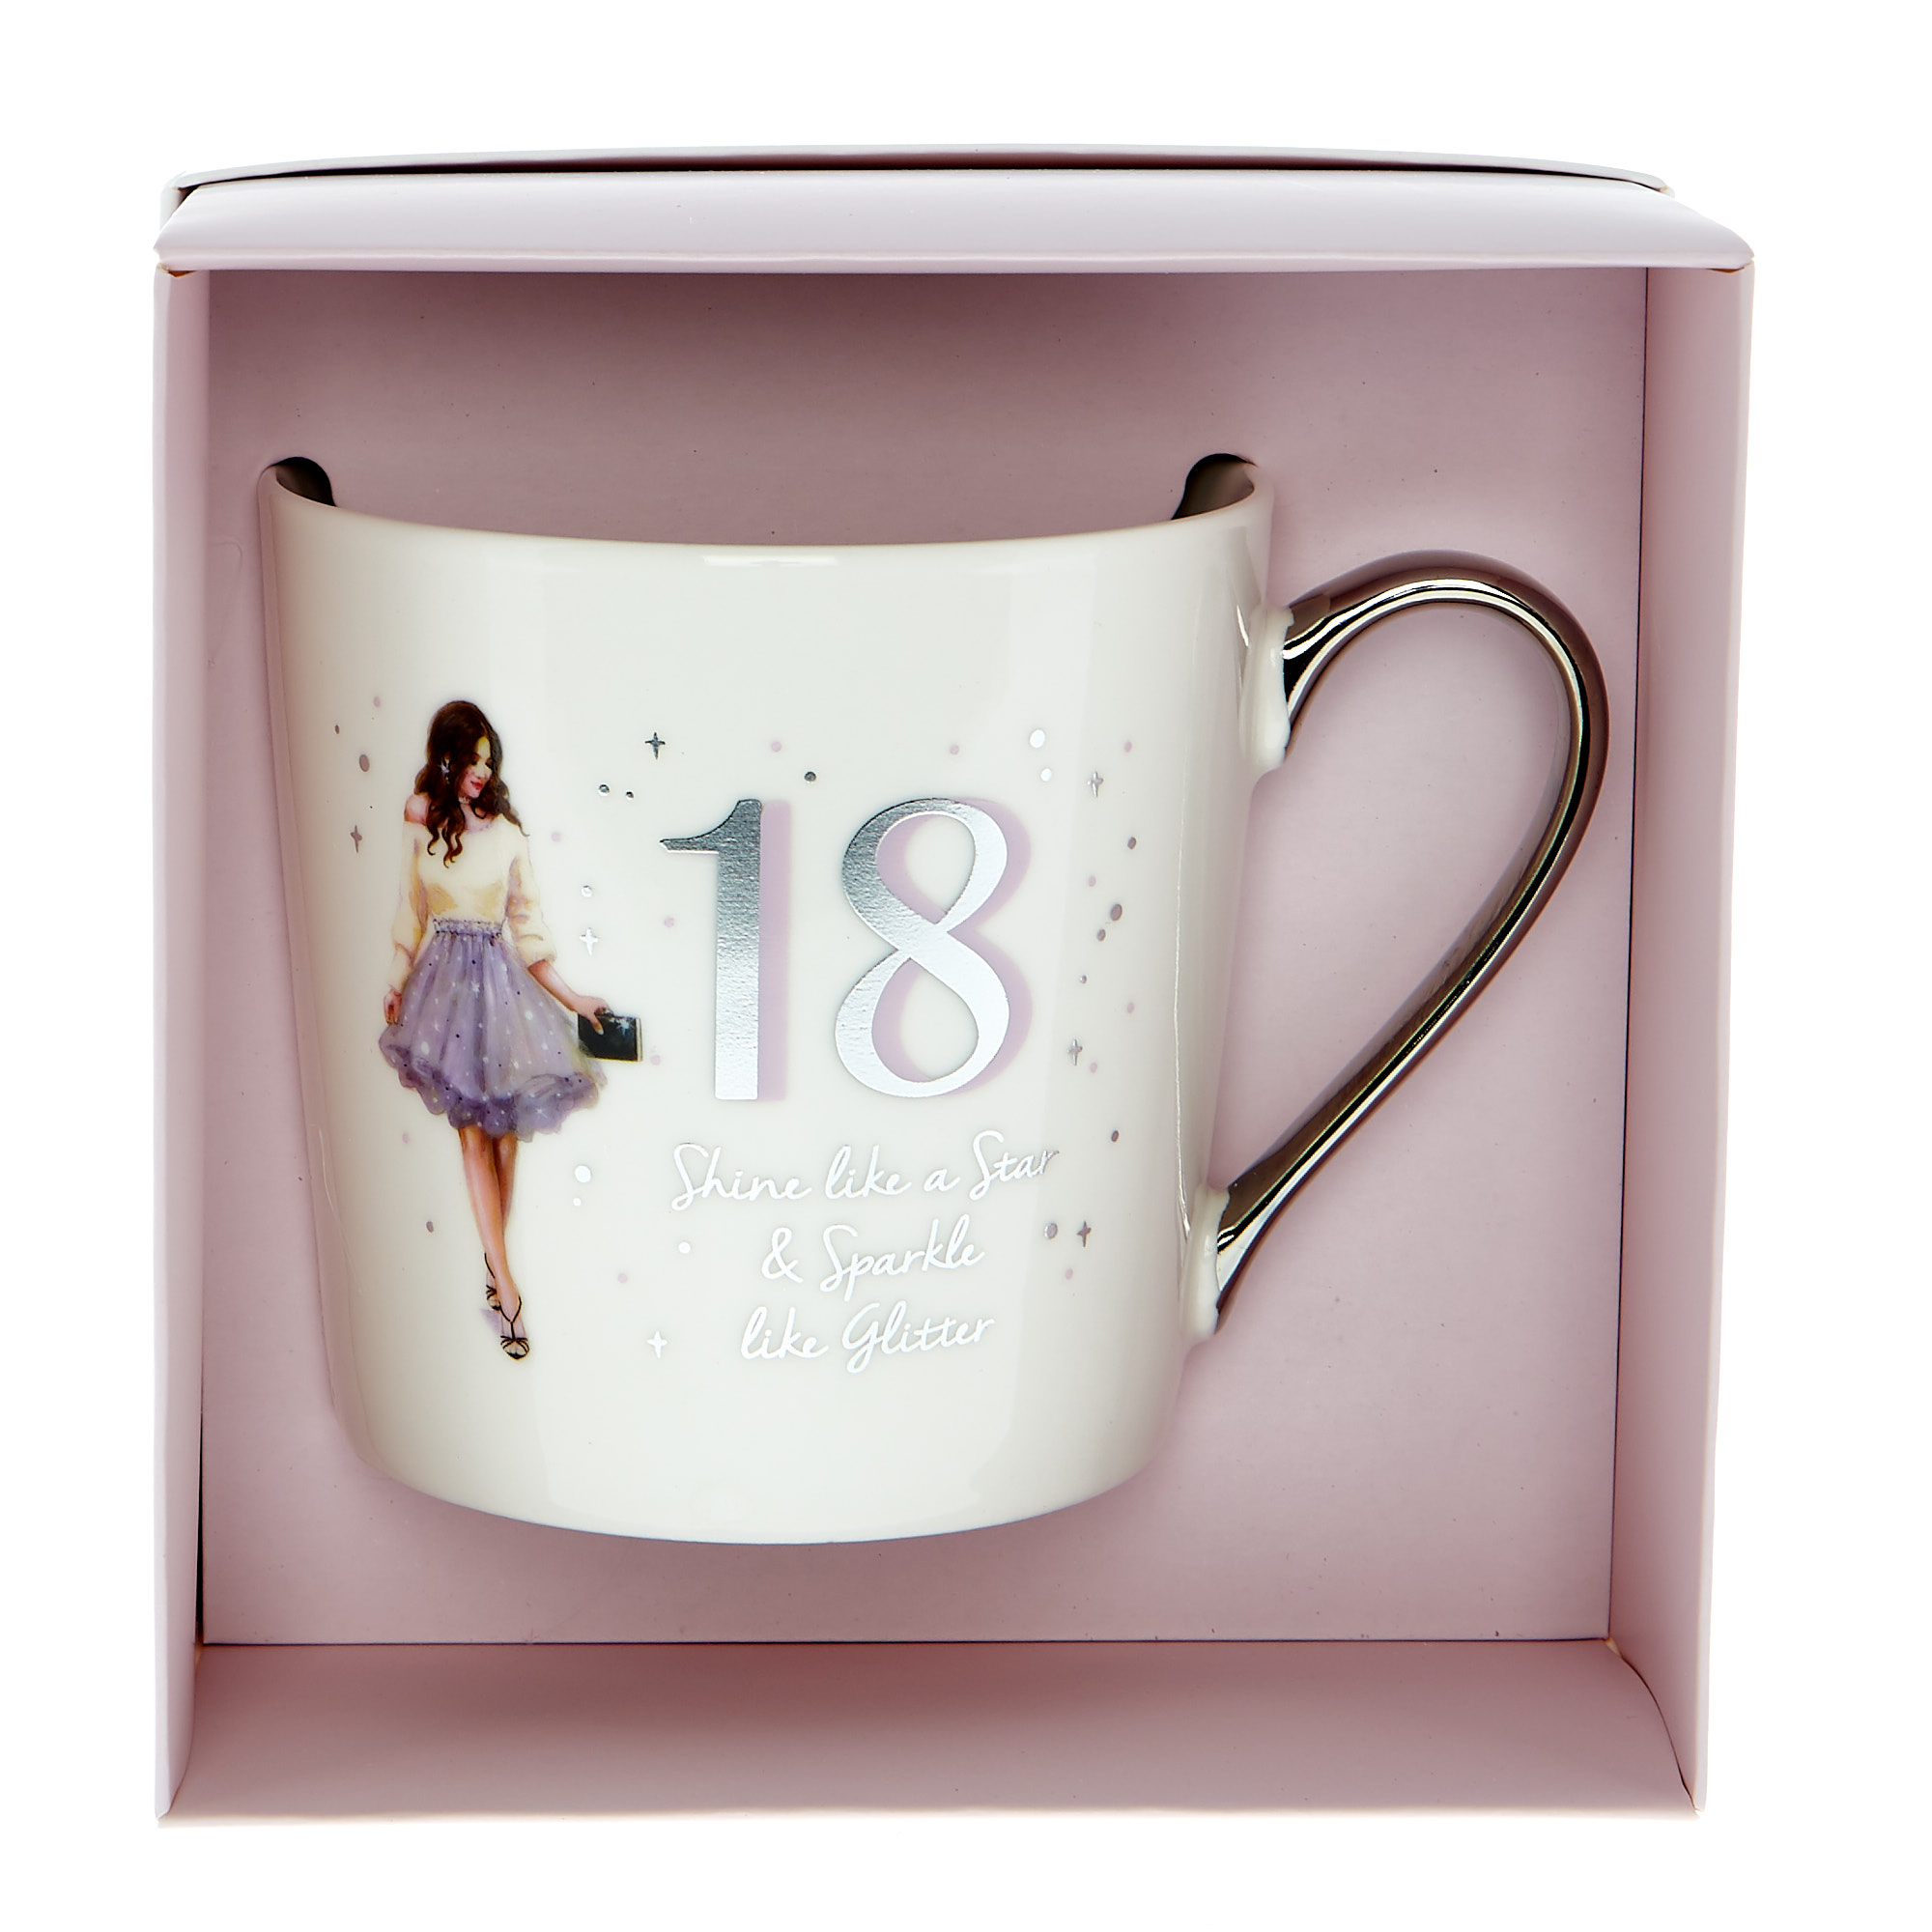 18th Birthday Mug In A Box - Shine Like A Star